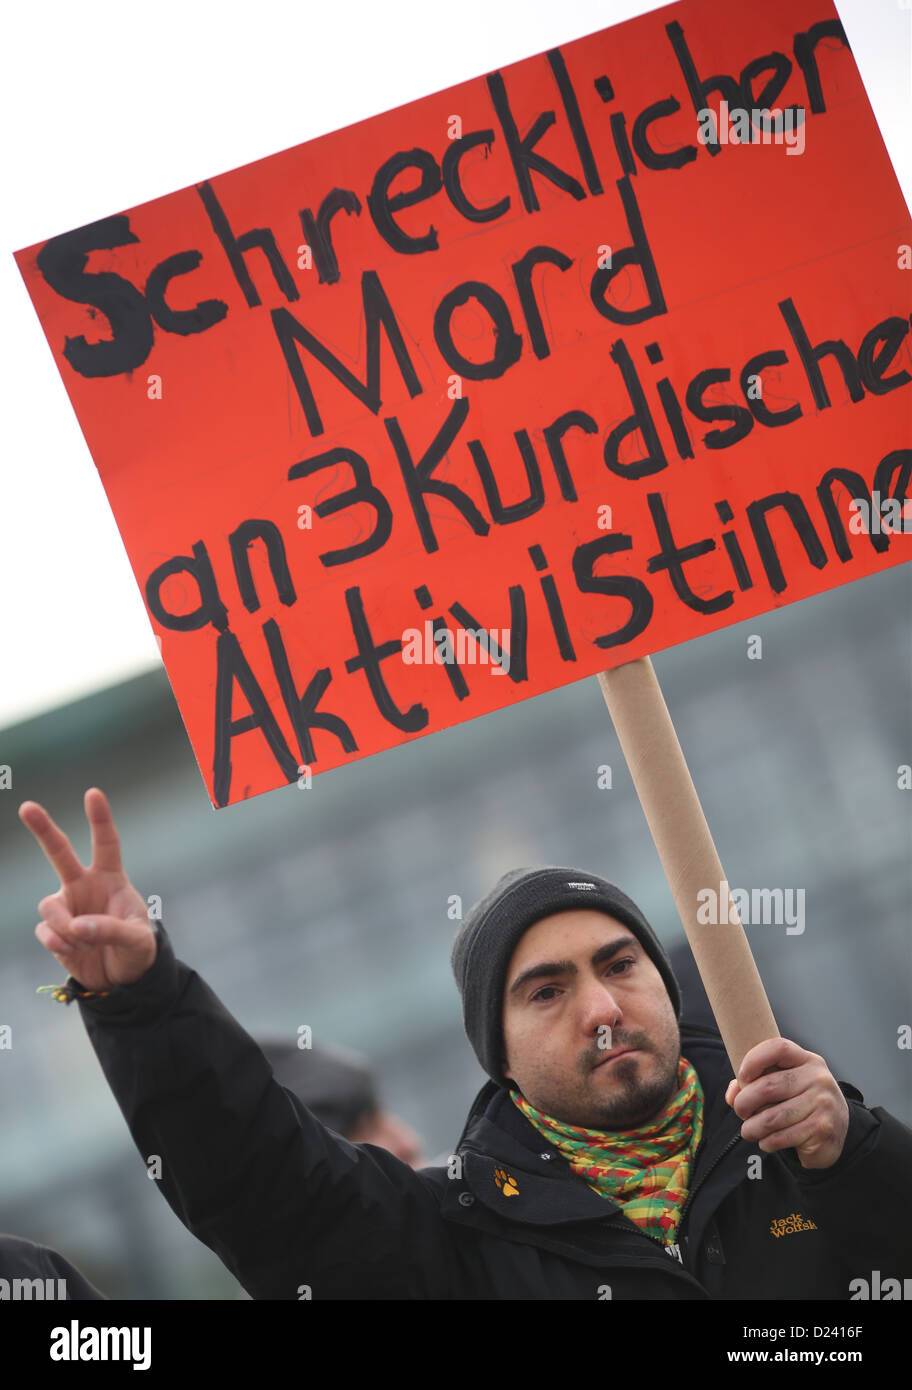 Ein Mann winkt das V-Zeichen während einer Demonstration der Solidarität am Pariser Platz in Berlin, Deutschland, 11. Januar 2013. Dutzende von Demonstranten versammelten sich an der französischen Botschaft einen Kranz für die drei kurdischen Frauen festzulegen, die mit einem Schuss in den Kopf in Paris getötet wurden. Foto: FLORIAN SCHUH Stockfoto